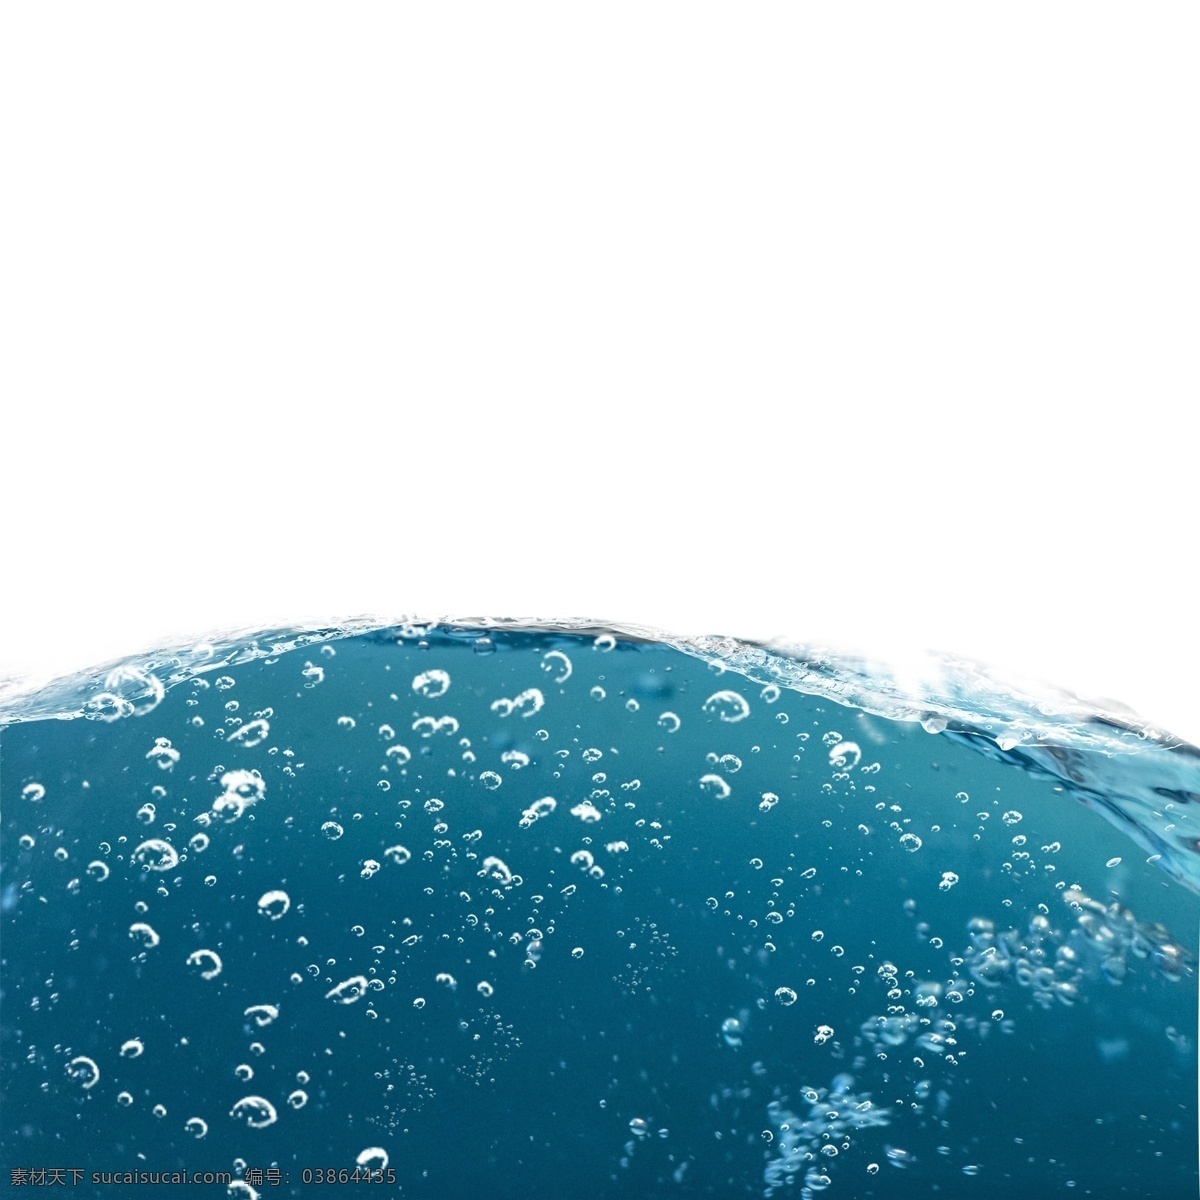 精美 蓝色 水面 氧气 气泡 元素 水底 慢慢 升起 透心凉水珠 用于 化妆品 海报 背景 密集的水珠 宁静的水平面 蓝蓝的海水 氧气气泡